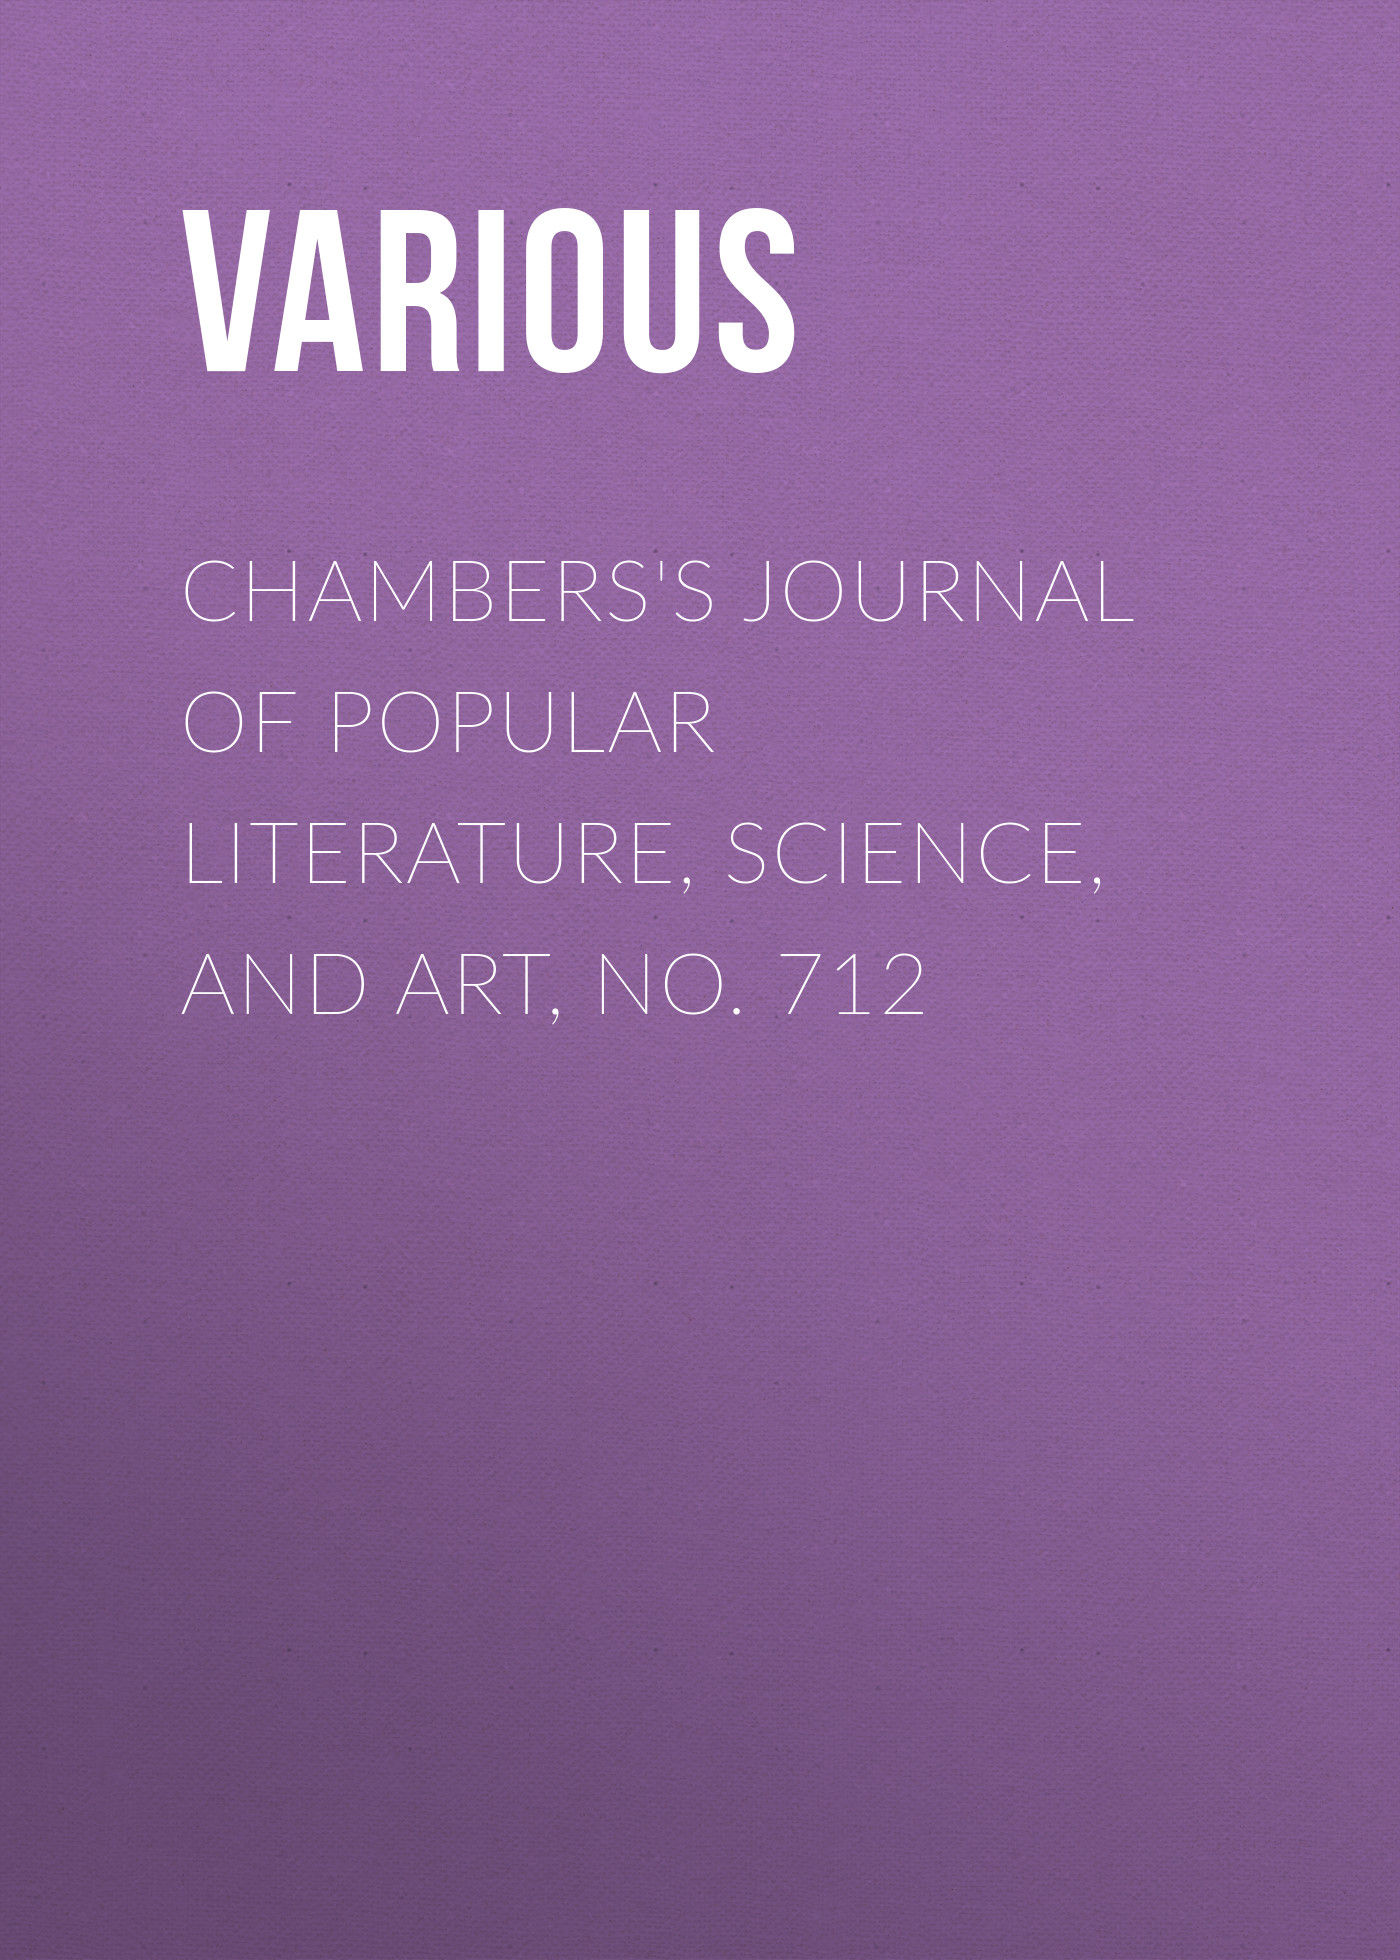 Книга Chambers's Journal of Popular Literature, Science, and Art, No. 712 из серии , созданная  Various, может относится к жанру Журналы, Зарубежная образовательная литература. Стоимость электронной книги Chambers's Journal of Popular Literature, Science, and Art, No. 712 с идентификатором 25569903 составляет 0 руб.